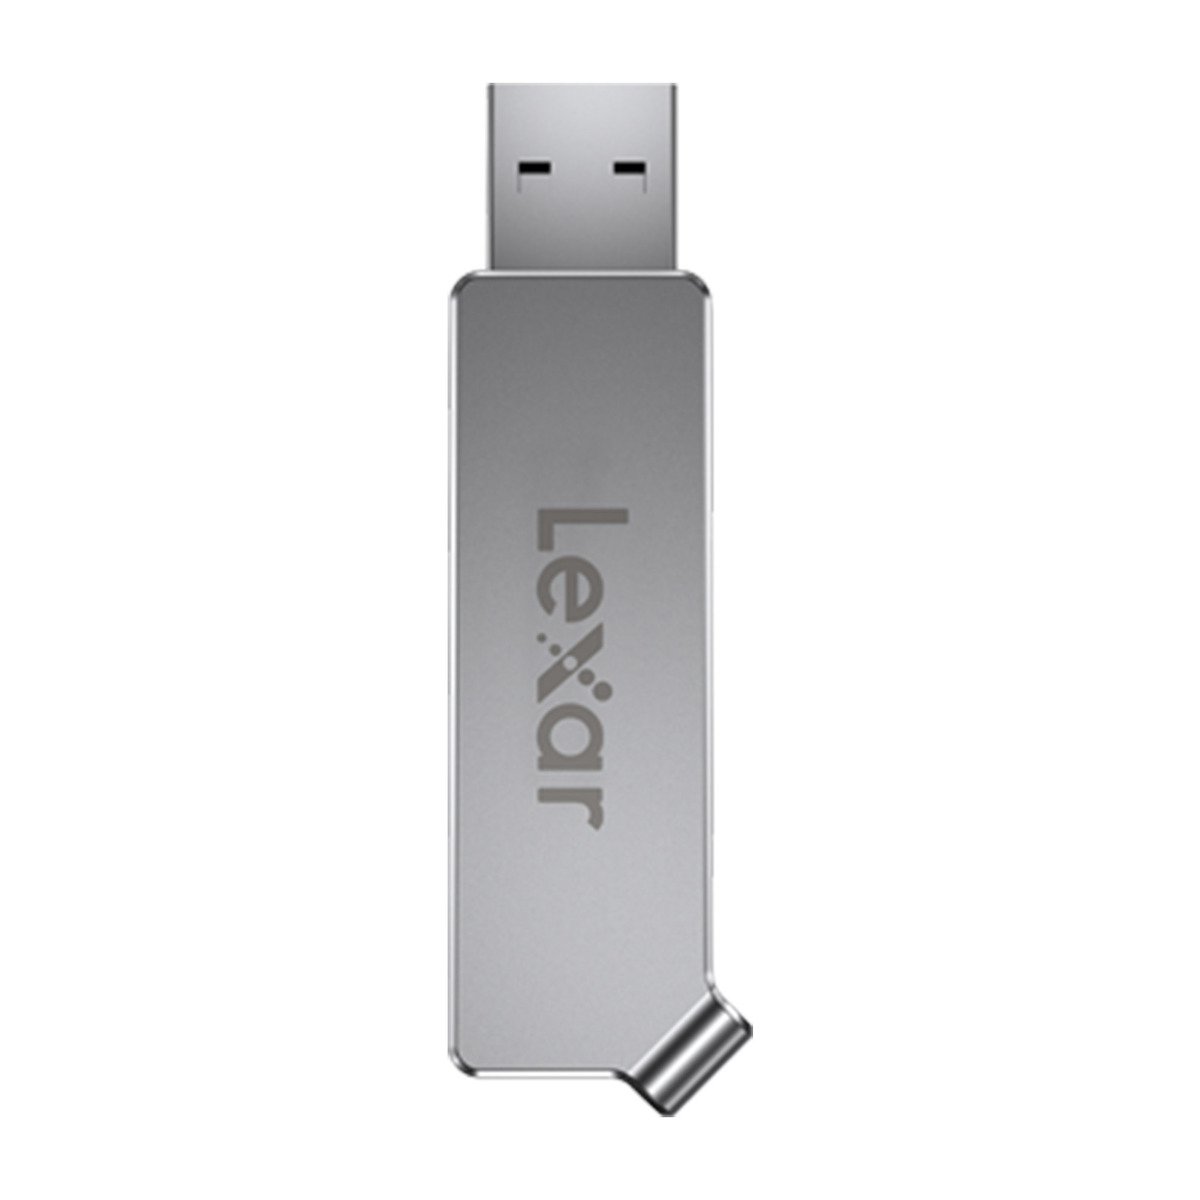 فلاش  درايفب بمنفذ USB مزدوج  نوع سي  بسعة 64 جيجابايت من ليكسار -  LJDD30C